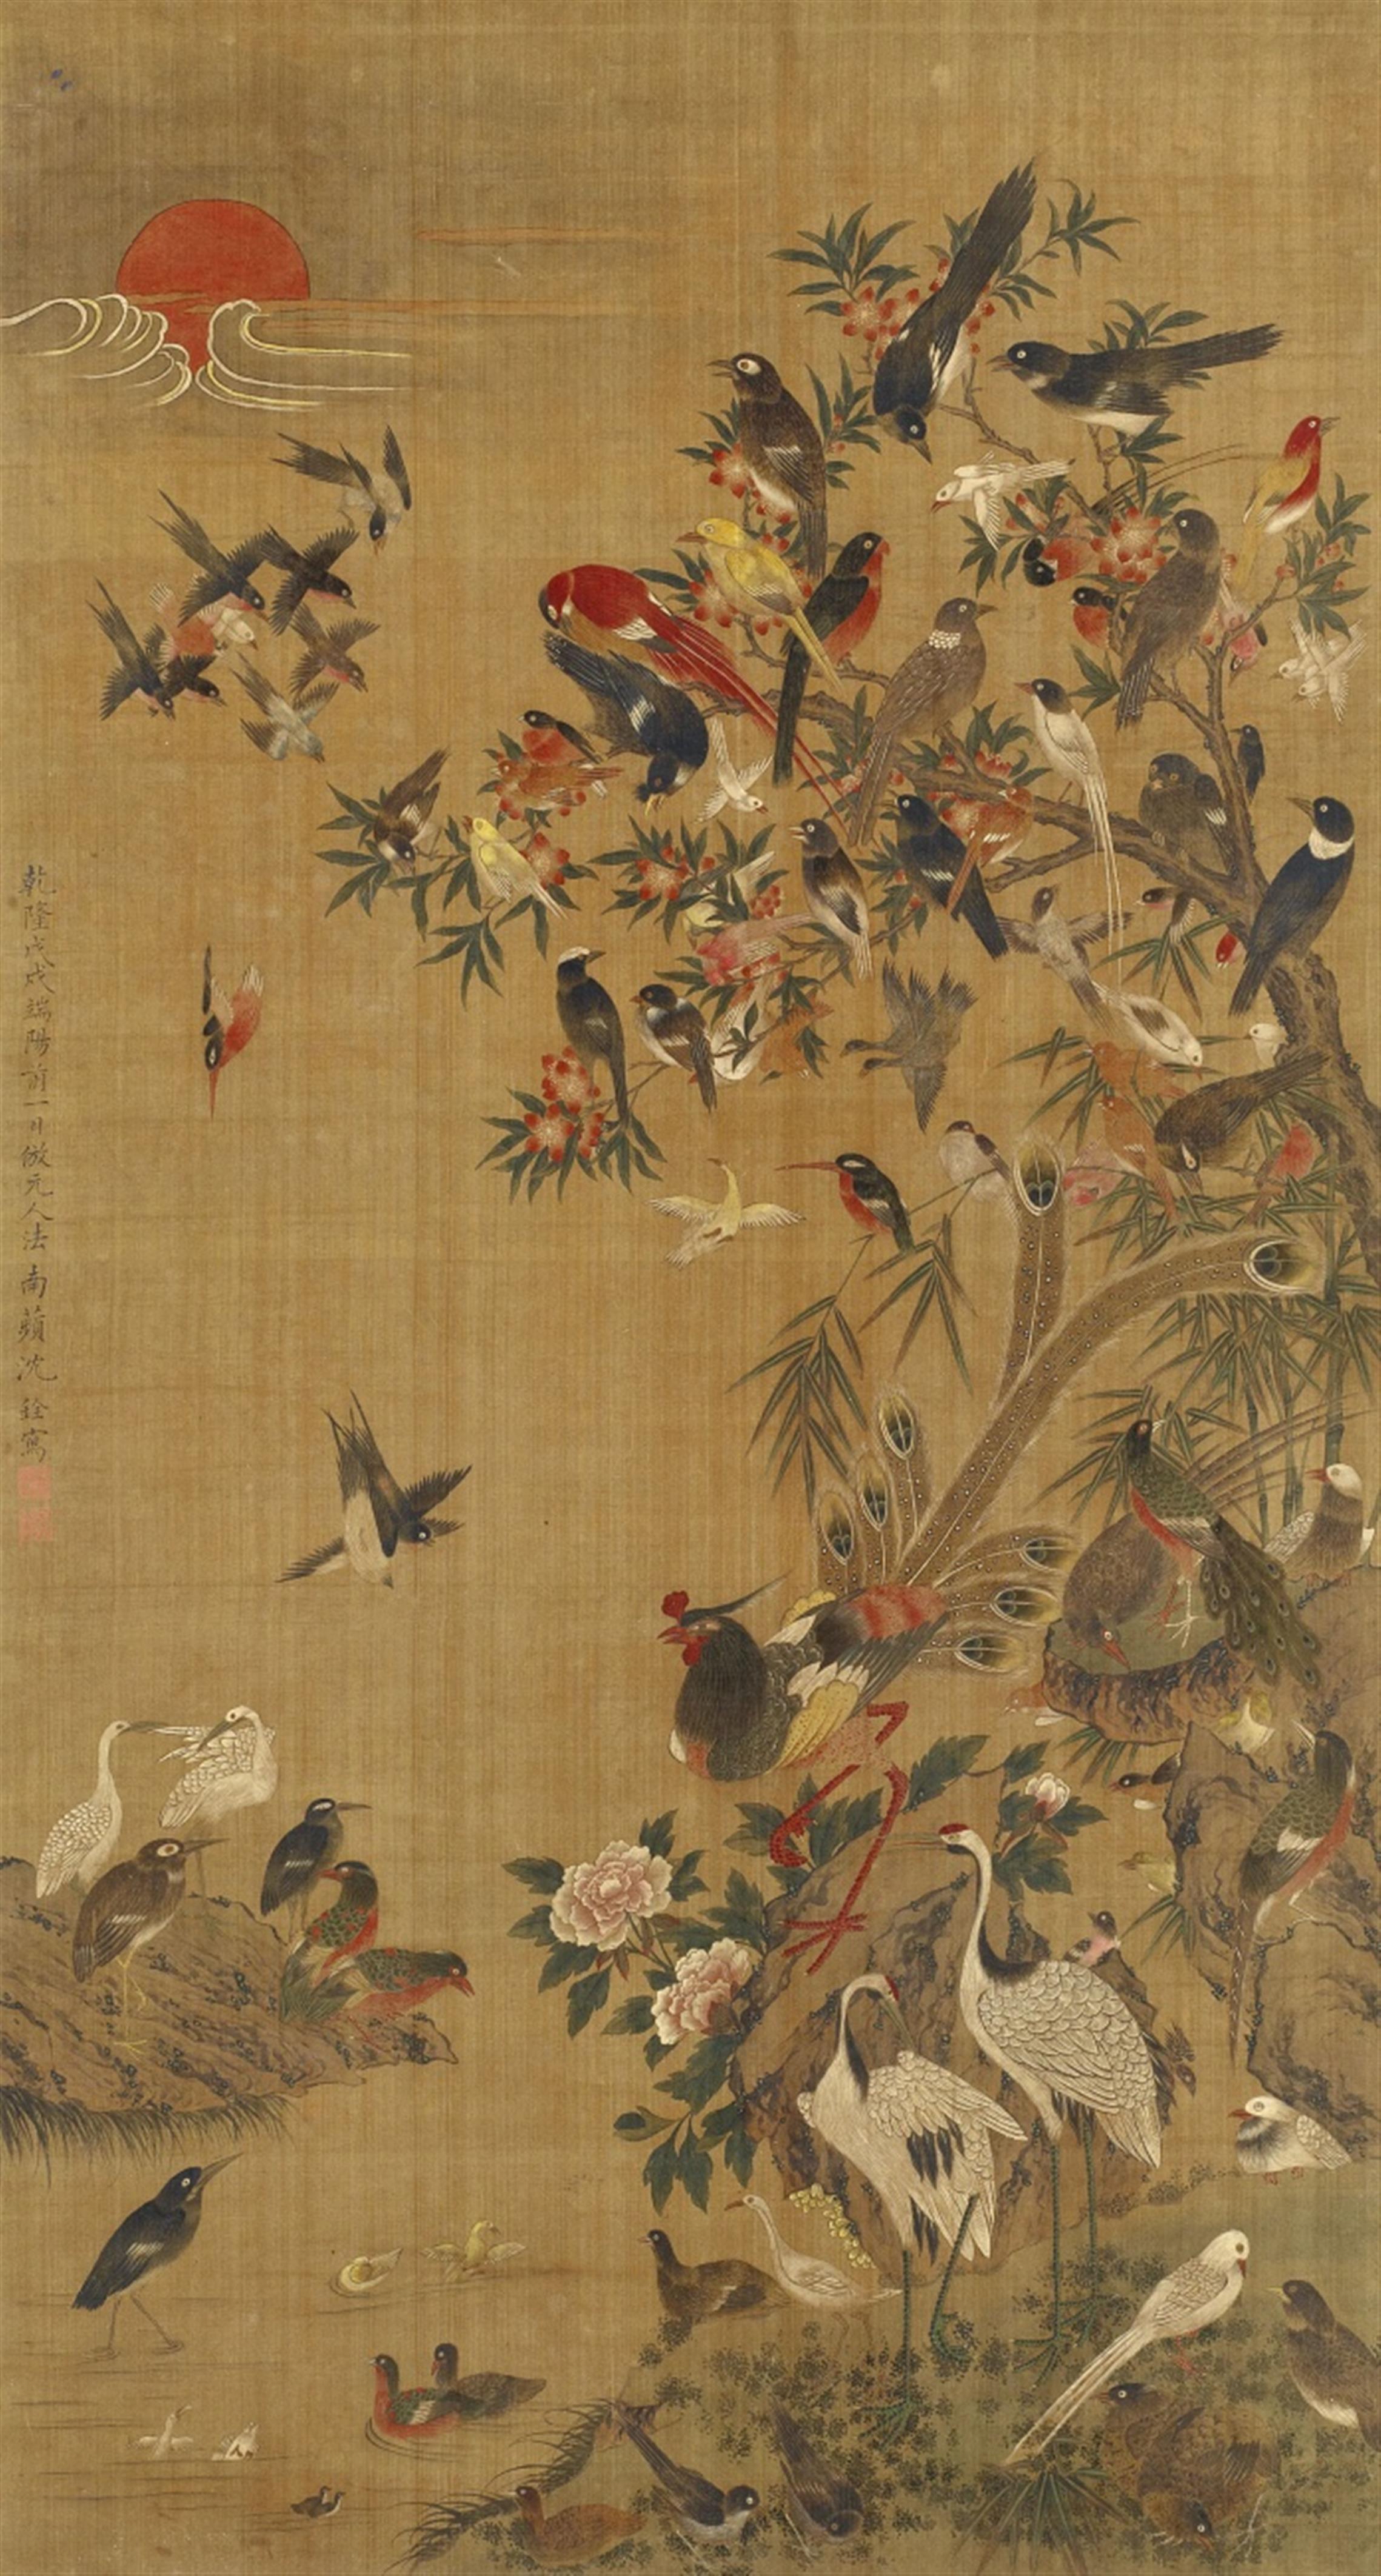 Shen Quan . 18./19. Jh. - Hundert Vogelpaare. Hängerolle. Tusche und Farben auf Seide. Aufschrift, zyklisch datiert Qianlong wuxu (1778), bez.: Nanpin Shen Quan und Siegel: Shen Quan zhi yin und Nanpin. - image-1